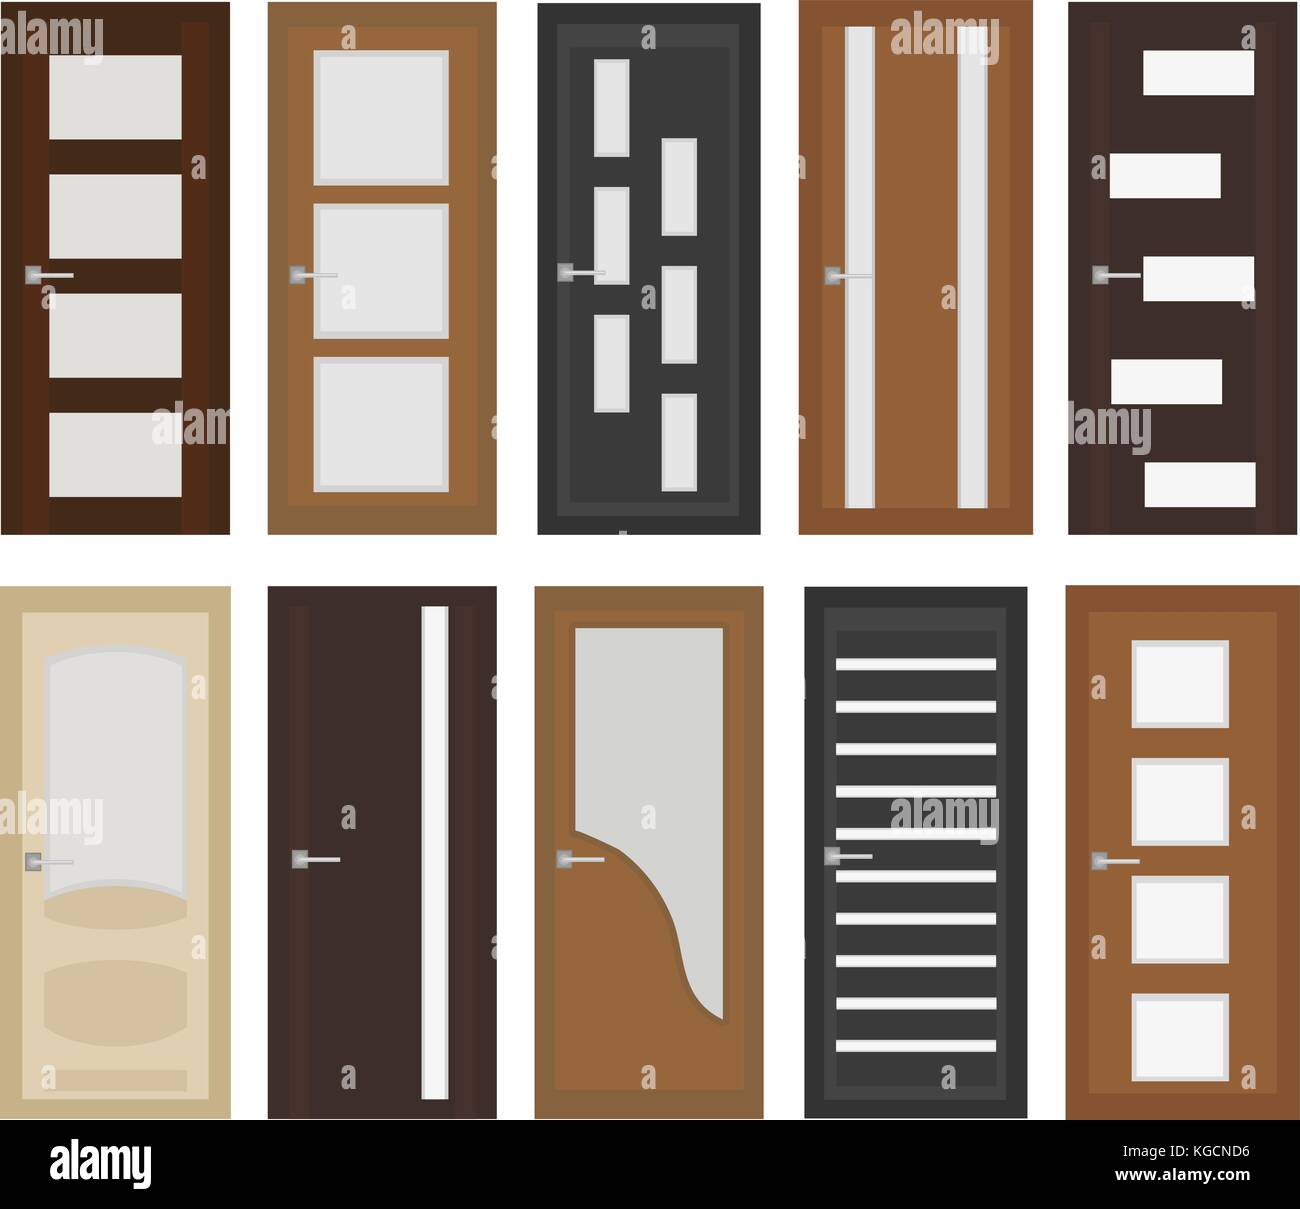 Interior Doors Set Flat Style Door With Different Types Of